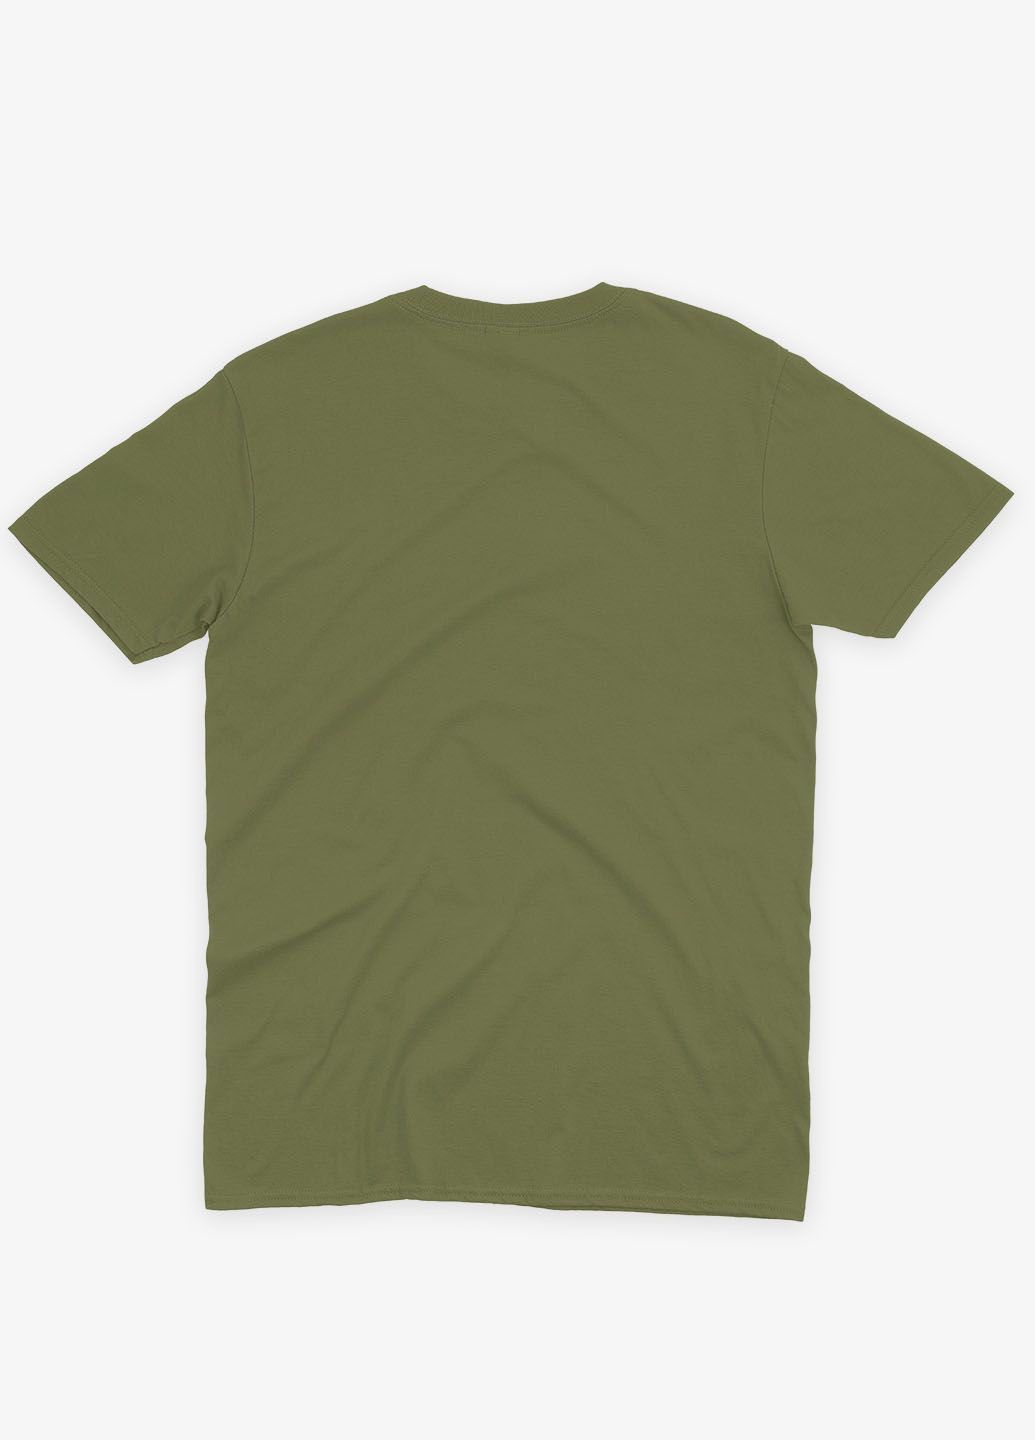 Хаки (оливковая) мужская футболка с принтом супергероя - человек-паук (ts001-1-hgr-006-014-105) Modno